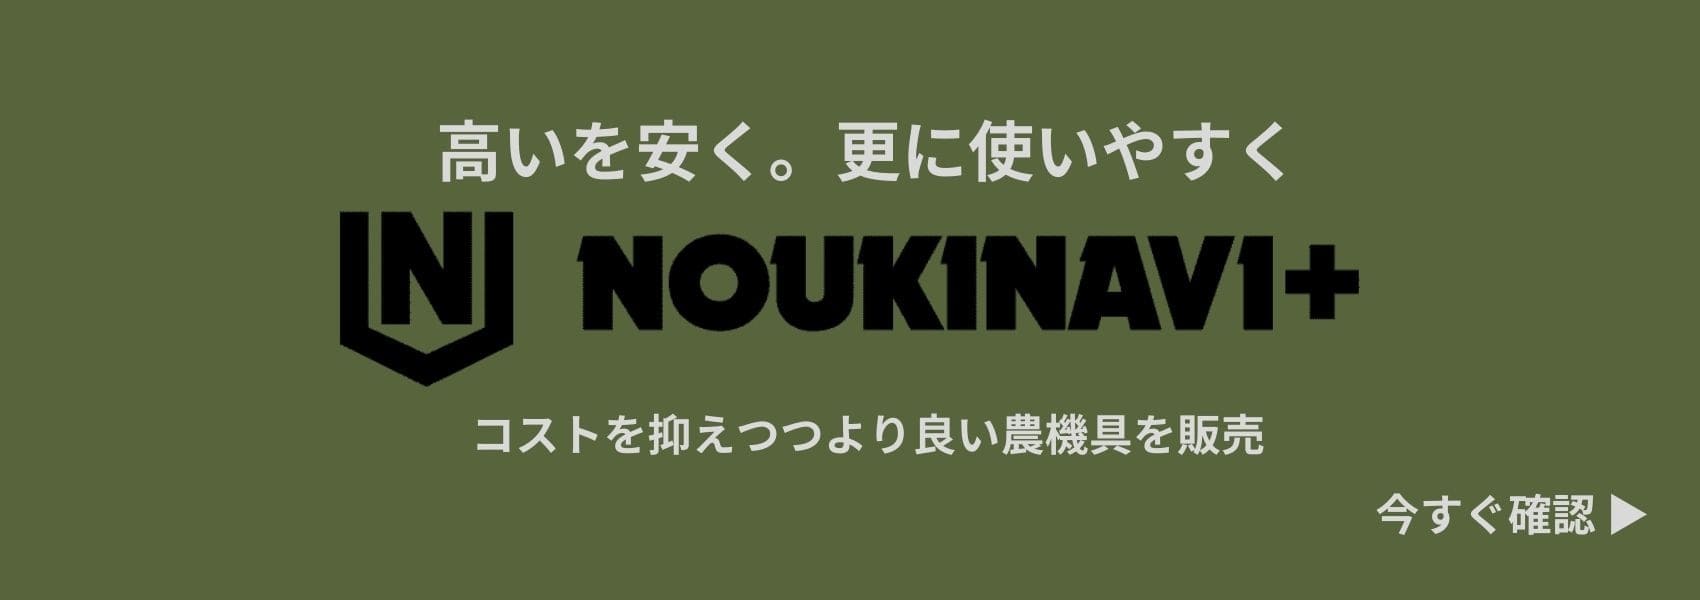 ノウキナビプラスはノウキナビのプライベートブランドです